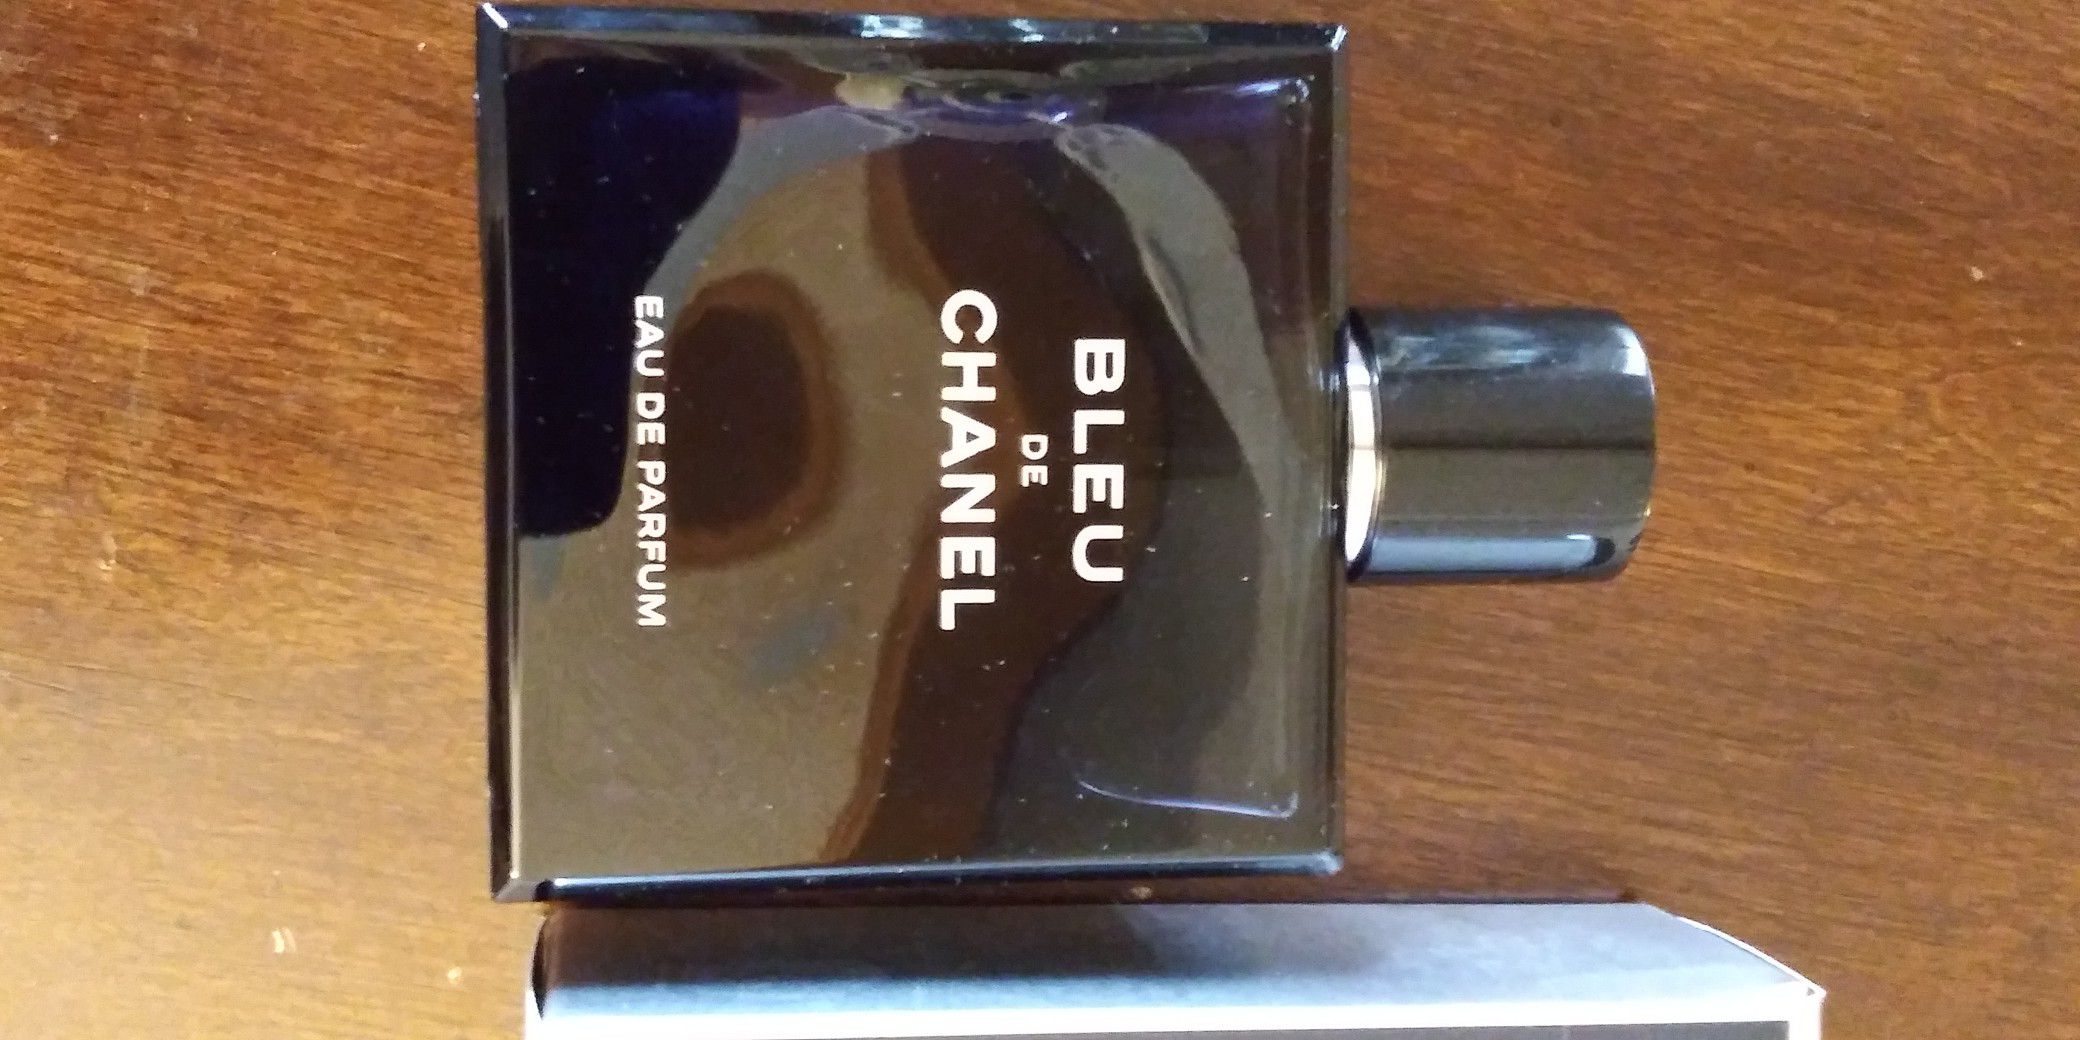 Bleu De Chanel Men's Cologne 5oz big bottle Eau de Parfum Authentic for  Sale in El Paso, TX - OfferUp